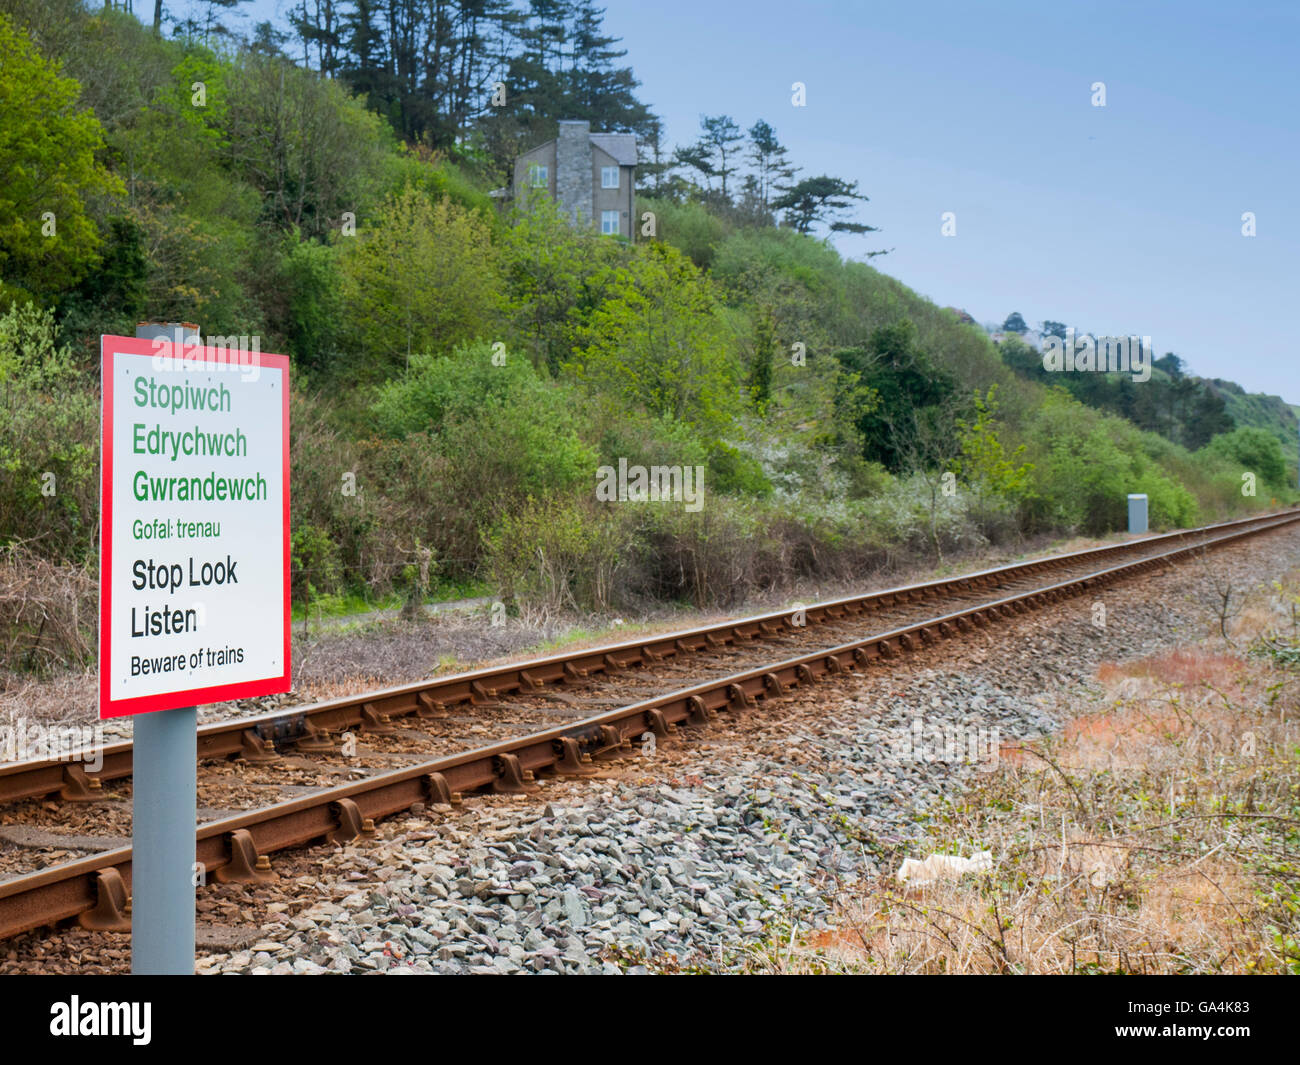 Smettere di guardare ascoltare incrocio ferroviario cartello di avviso in lingua inglese e gallese Foto Stock